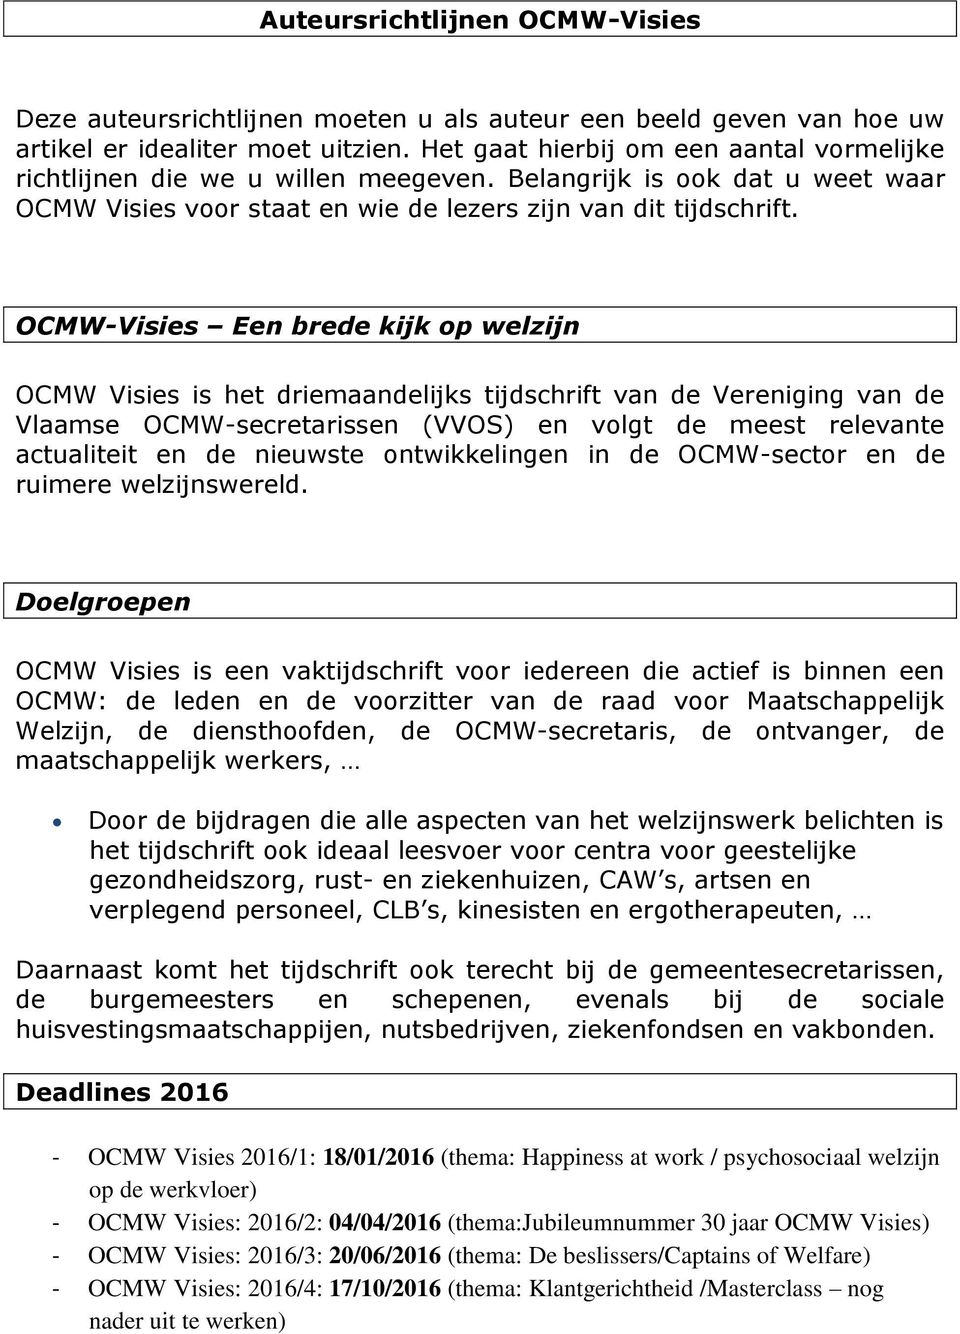 OCMW-Visies Een brede kijk op welzijn OCMW Visies is het driemaandelijks tijdschrift van de Vereniging van de Vlaamse OCMW-secretarissen (VVOS) en volgt de meest relevante actualiteit en de nieuwste